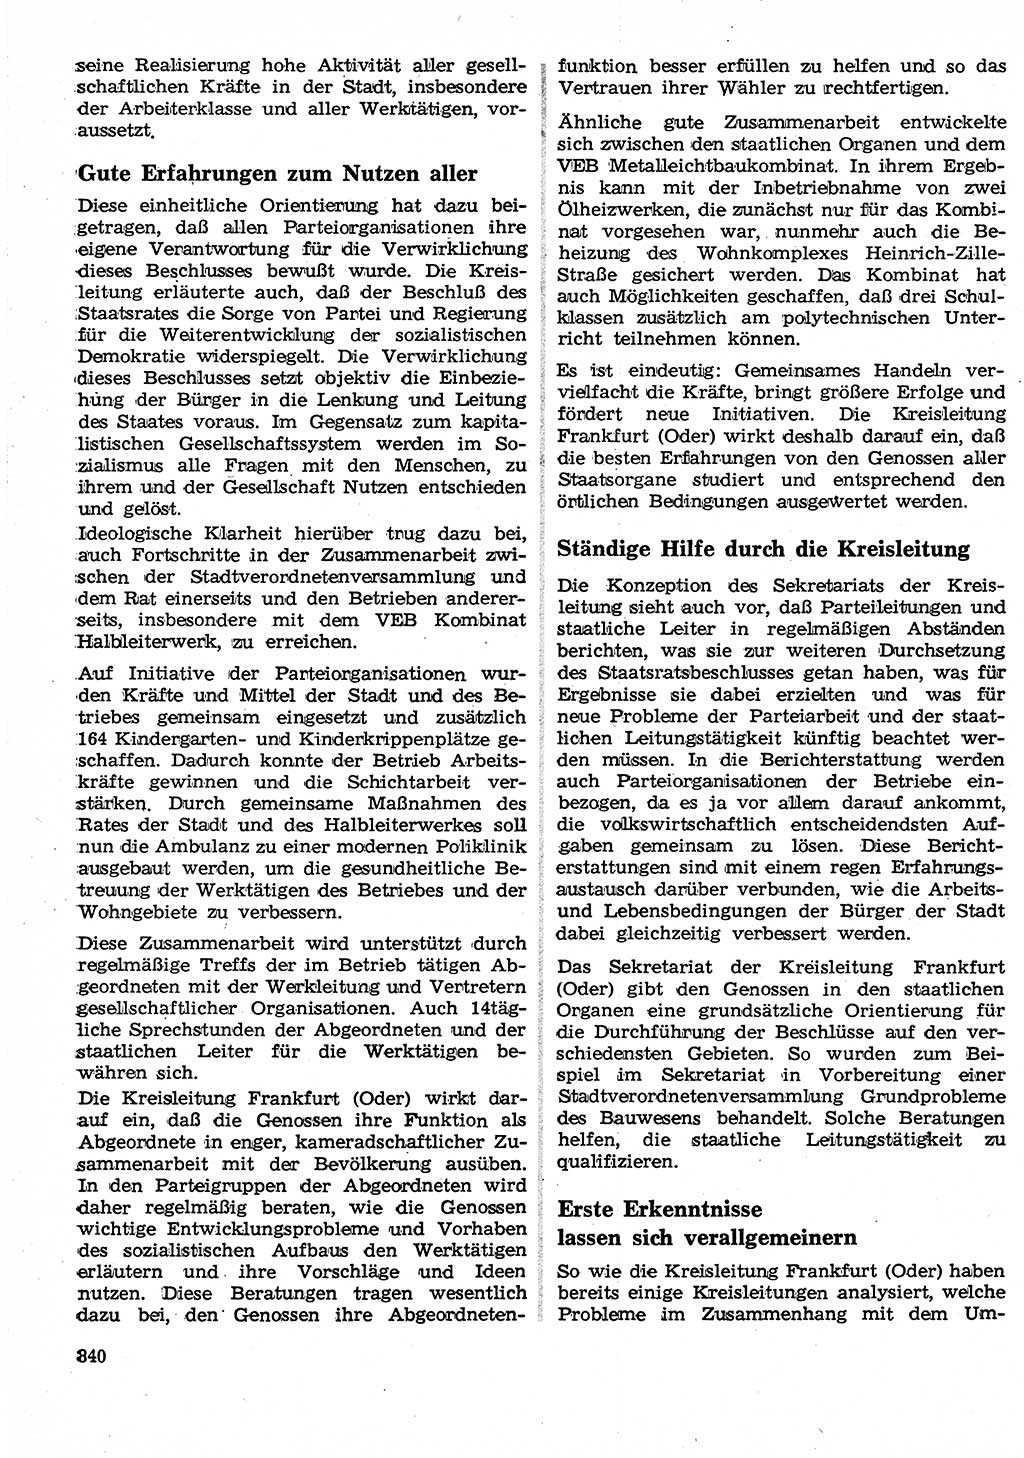 Neuer Weg (NW), Organ des Zentralkomitees (ZK) der SED (Sozialistische Einheitspartei Deutschlands) für Fragen des Parteilebens, 25. Jahrgang [Deutsche Demokratische Republik (DDR)] 1970, Seite 840 (NW ZK SED DDR 1970, S. 840)